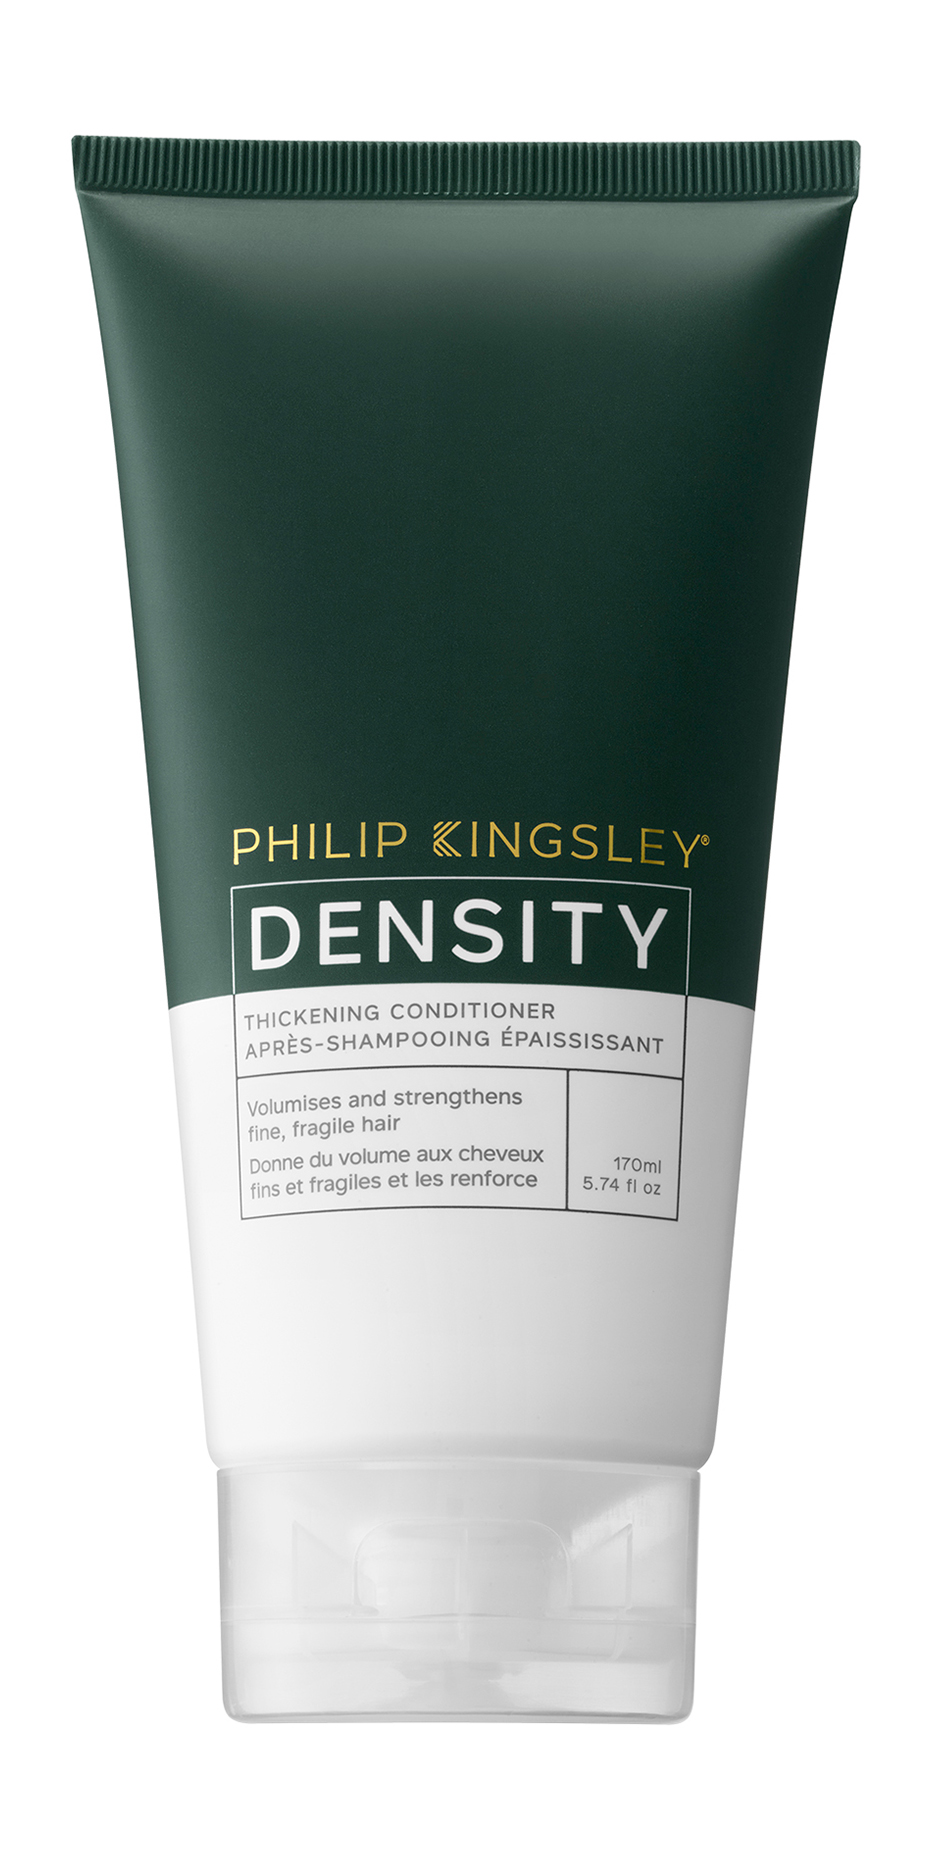 Кондиционер для волос Philip Kingsley Density Thickening Conditioner, 170 мл шампунь с биотином молекулой цинка рса и системой gluco omega для тонких волос full density e2278200 1000 мл